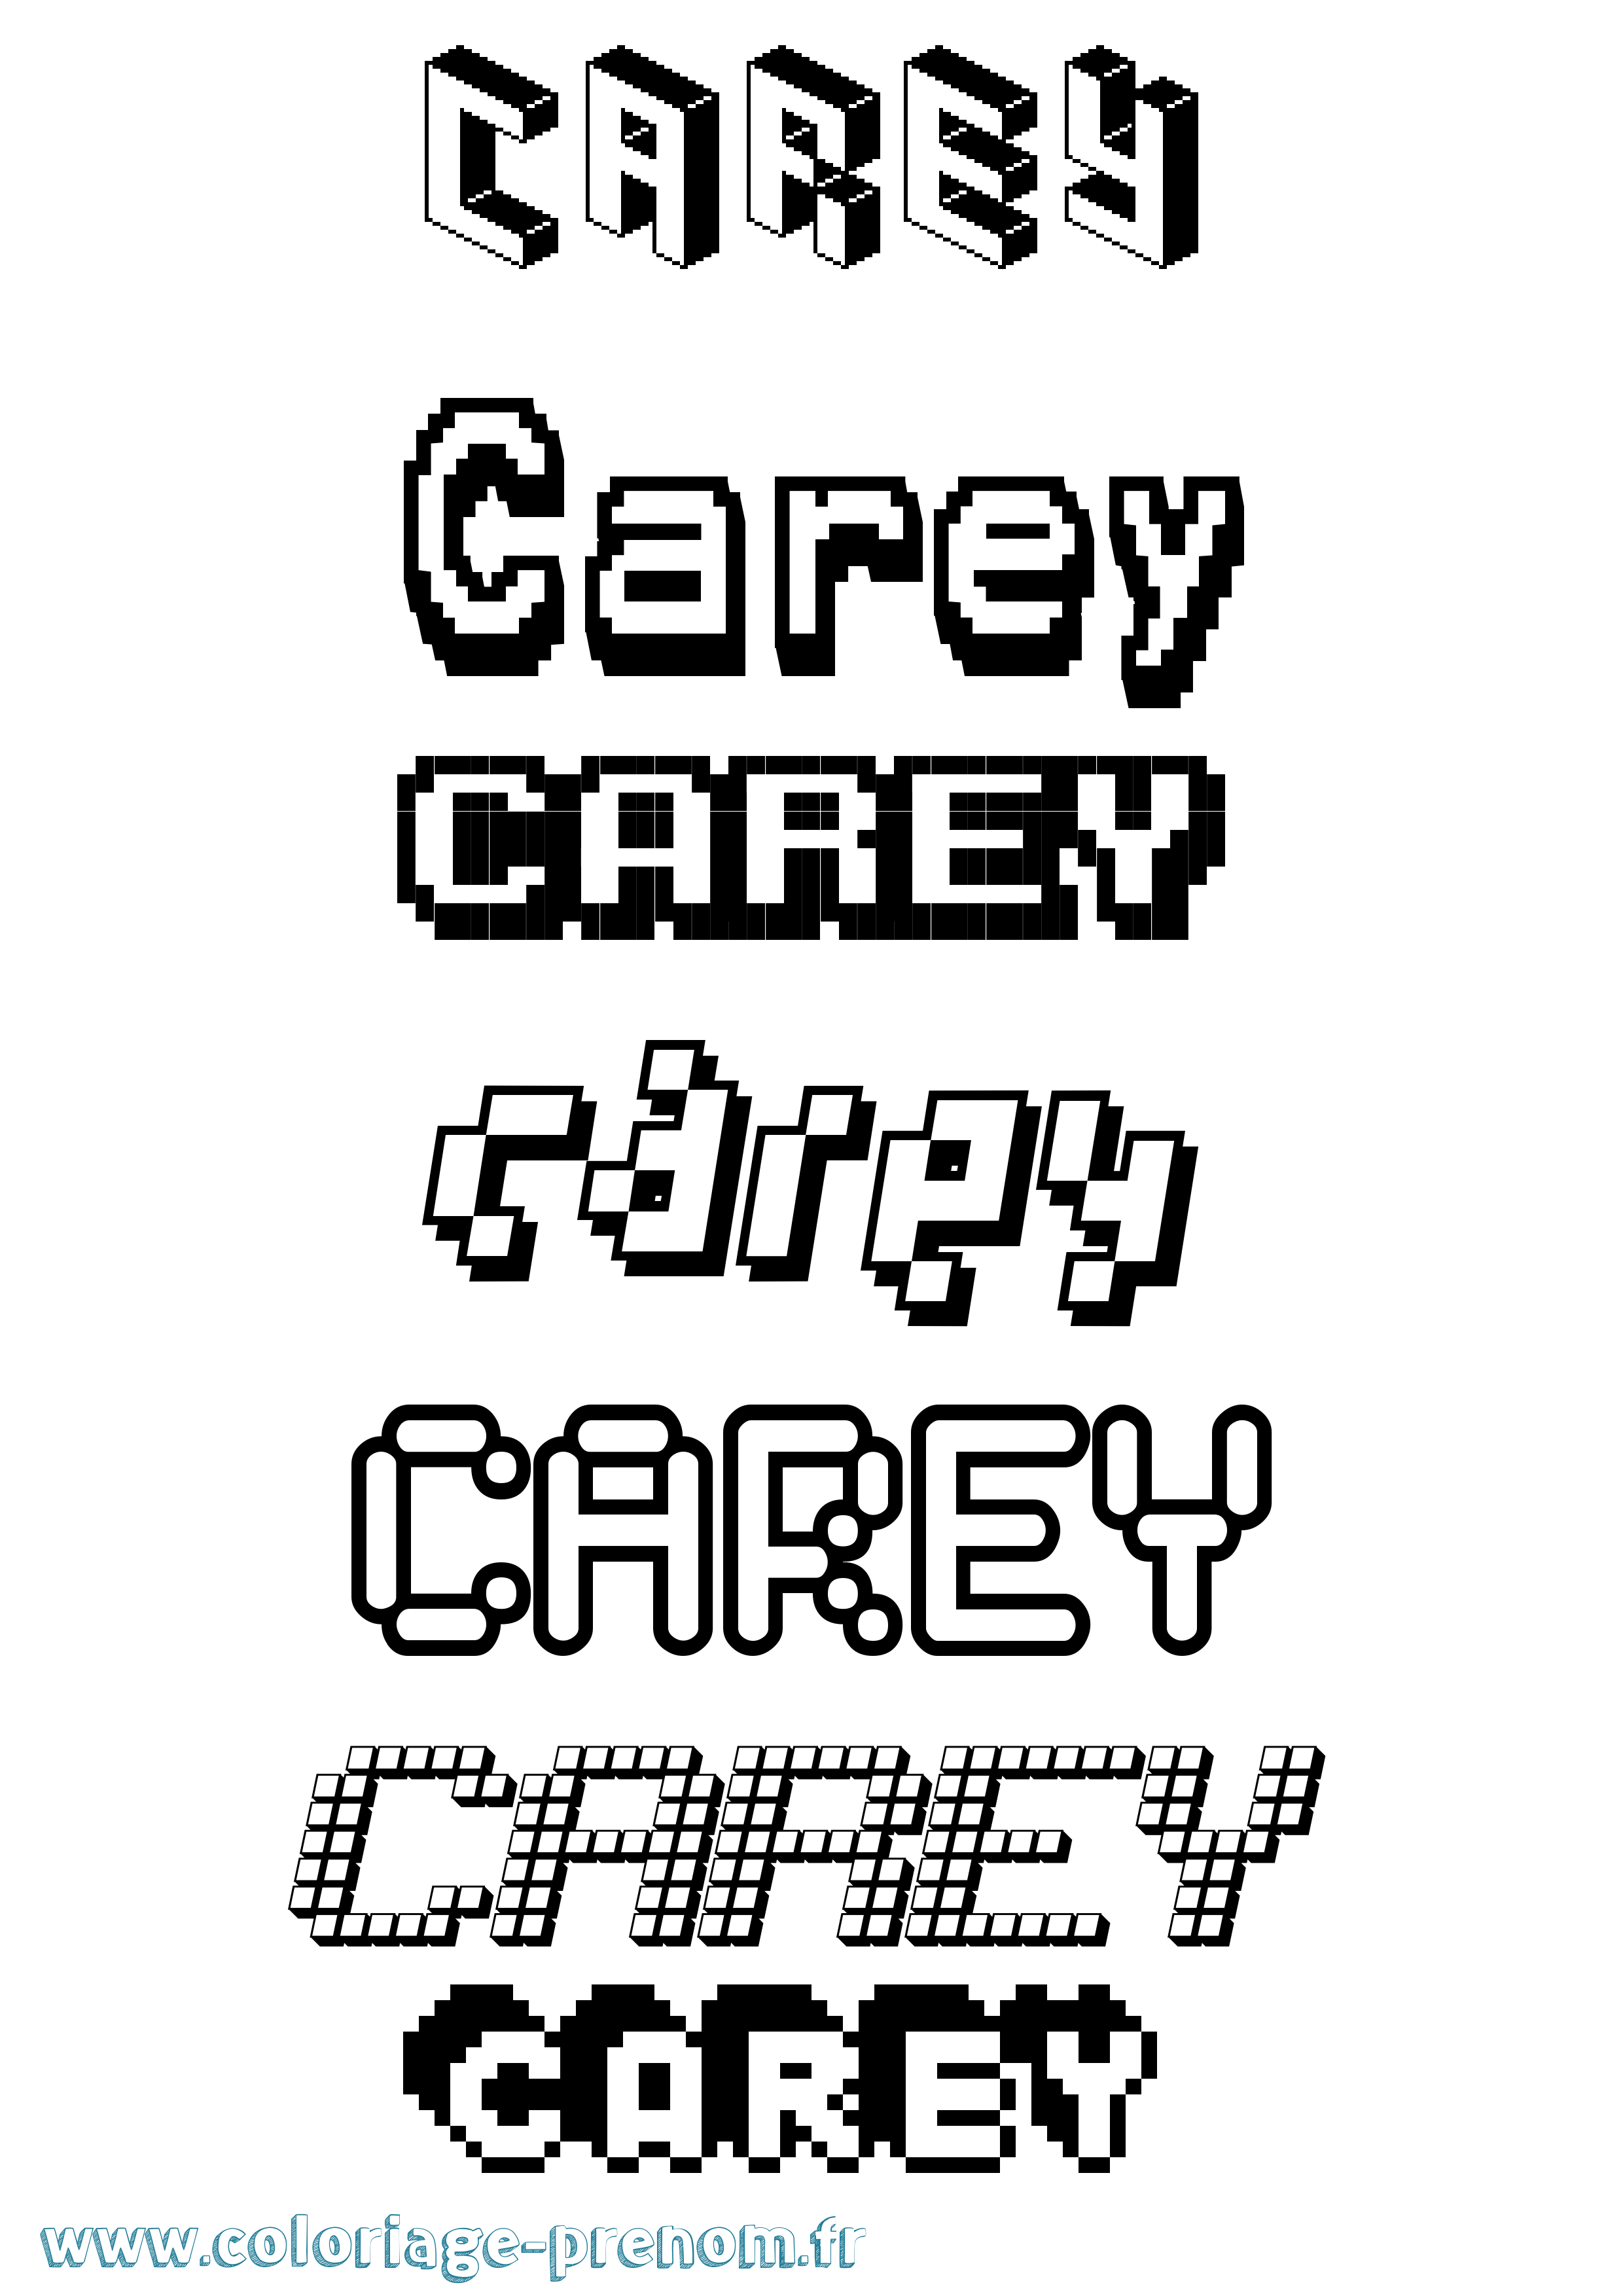 Coloriage prénom Carey Pixel